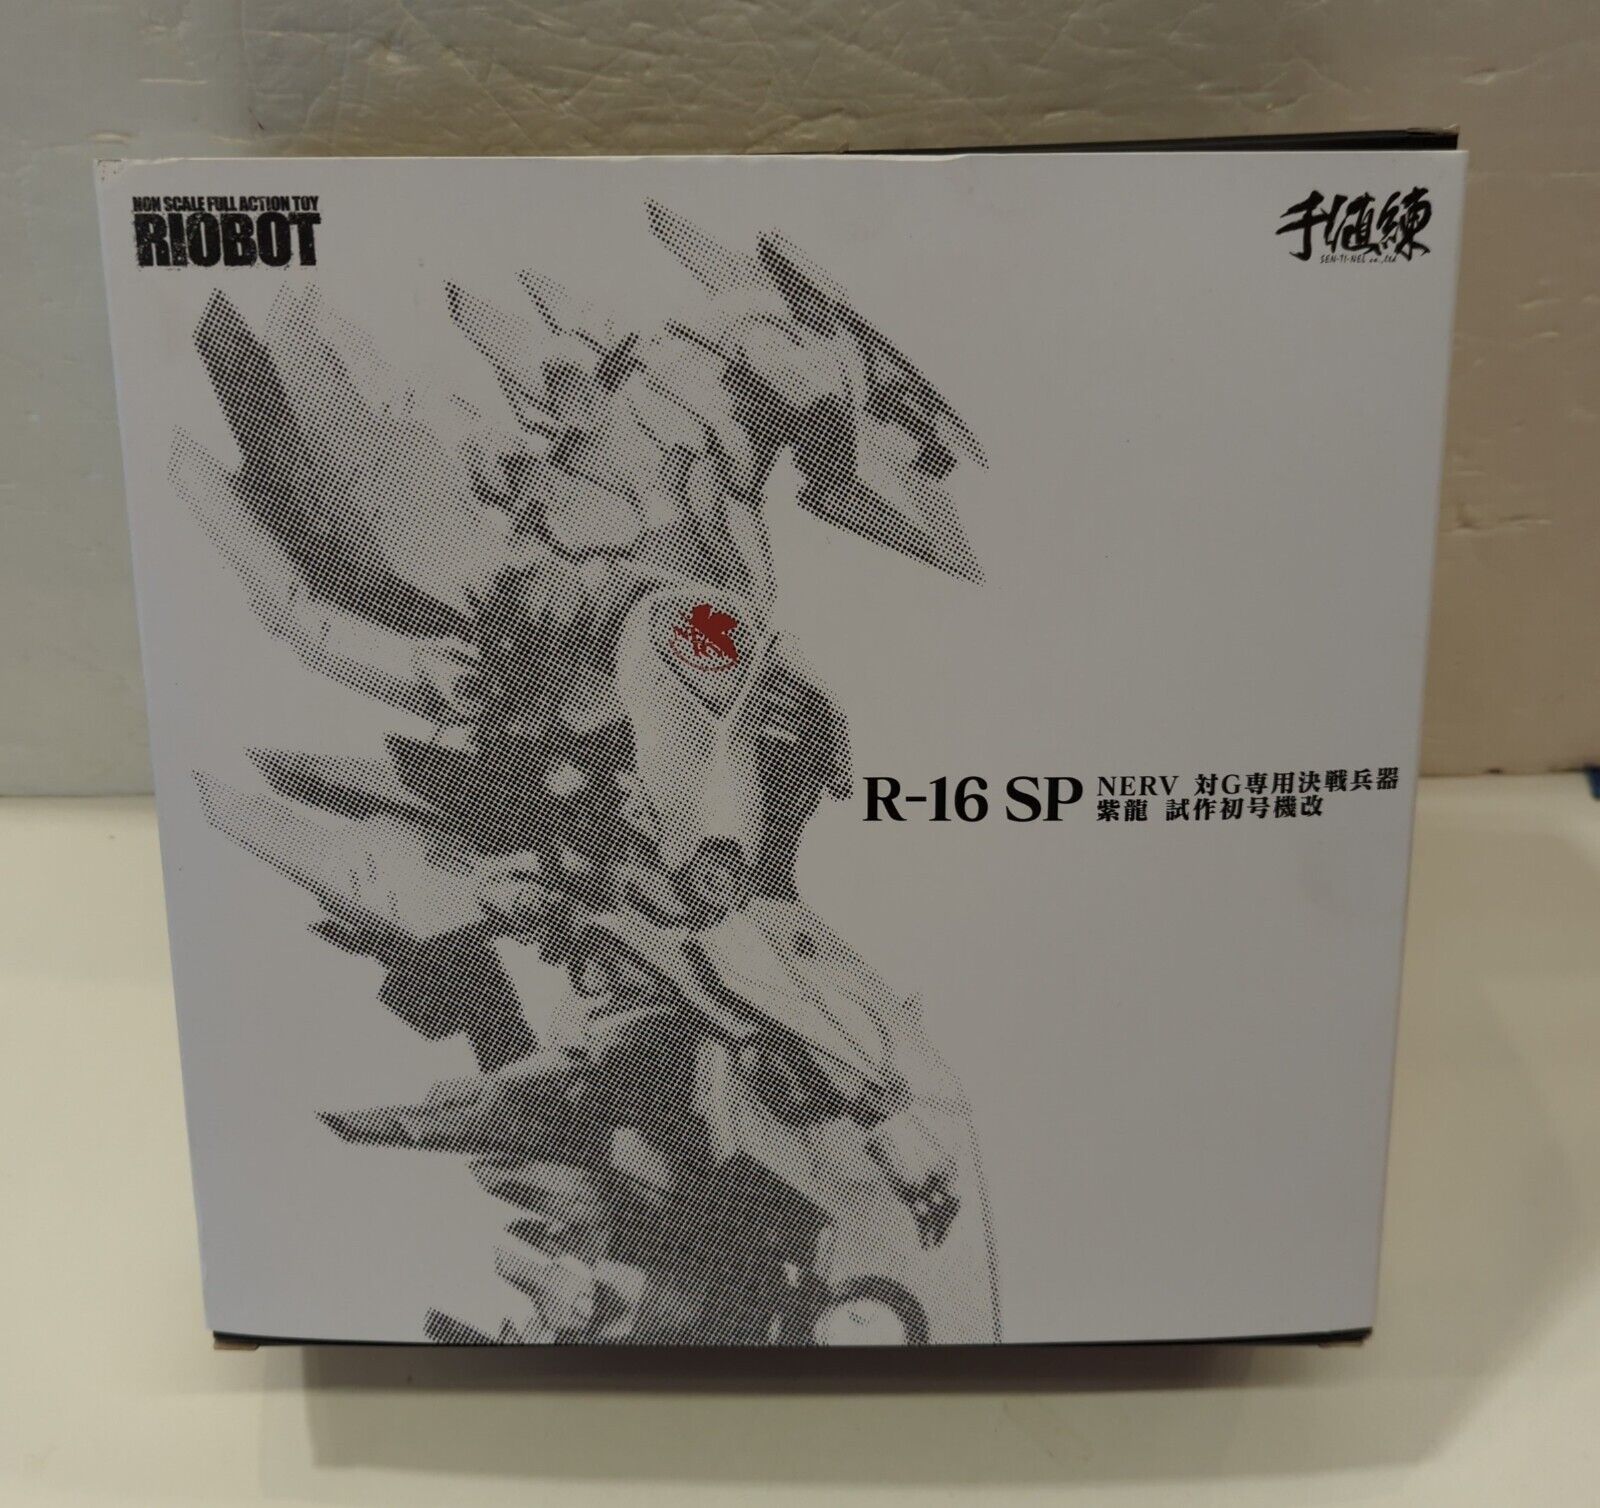 RIOBOT R-16SP Godzilla vs. Evangelion Nerv vs. G Kessen Shiryu Sentinel Limited